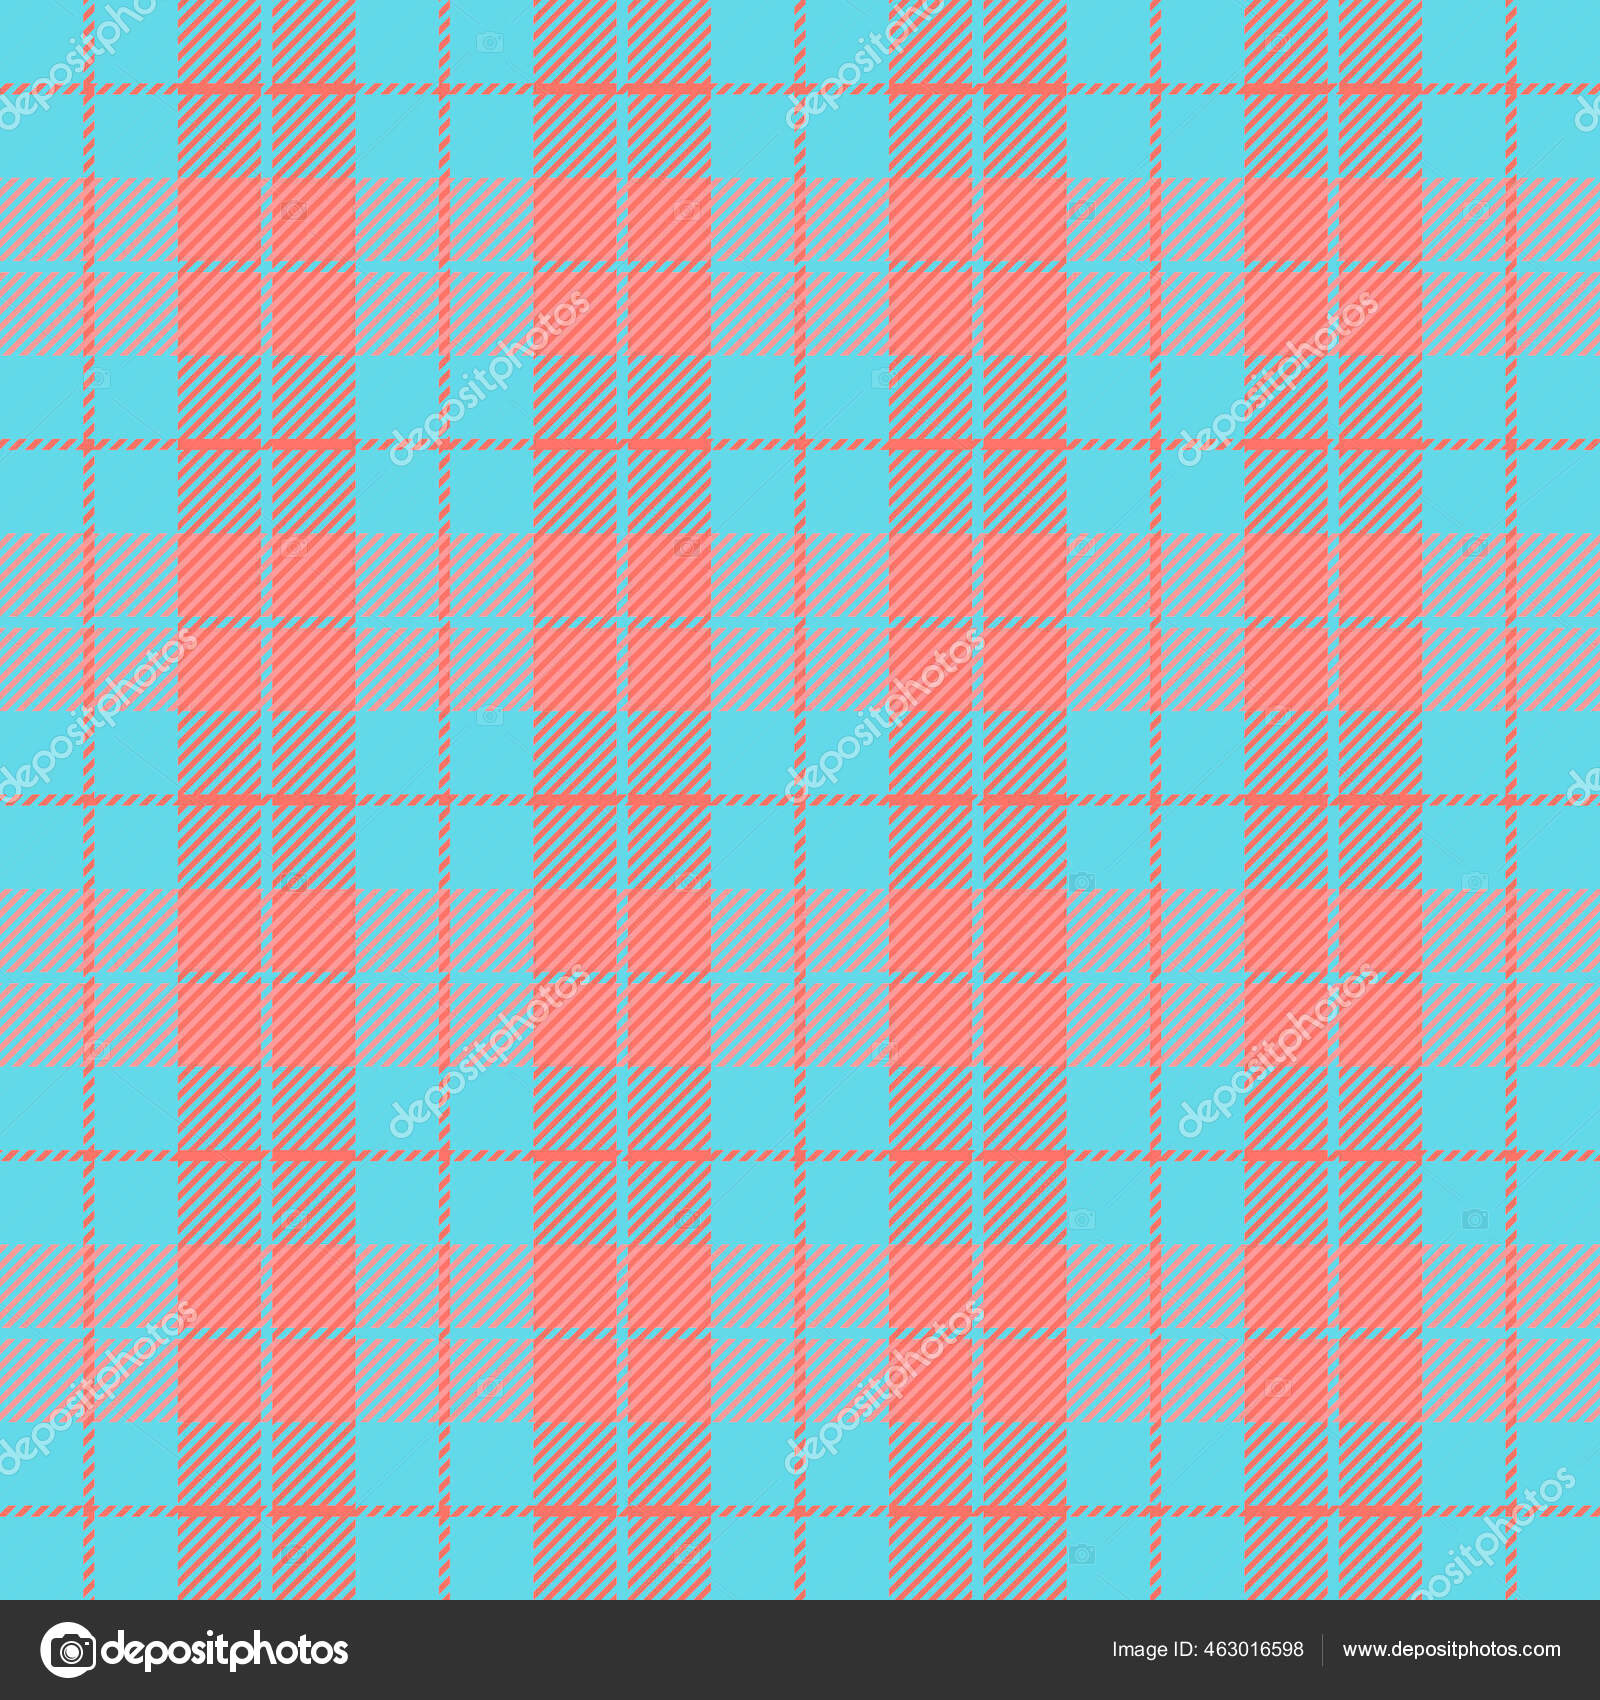 Fundo de textura padrão xadrez vermelho e azul